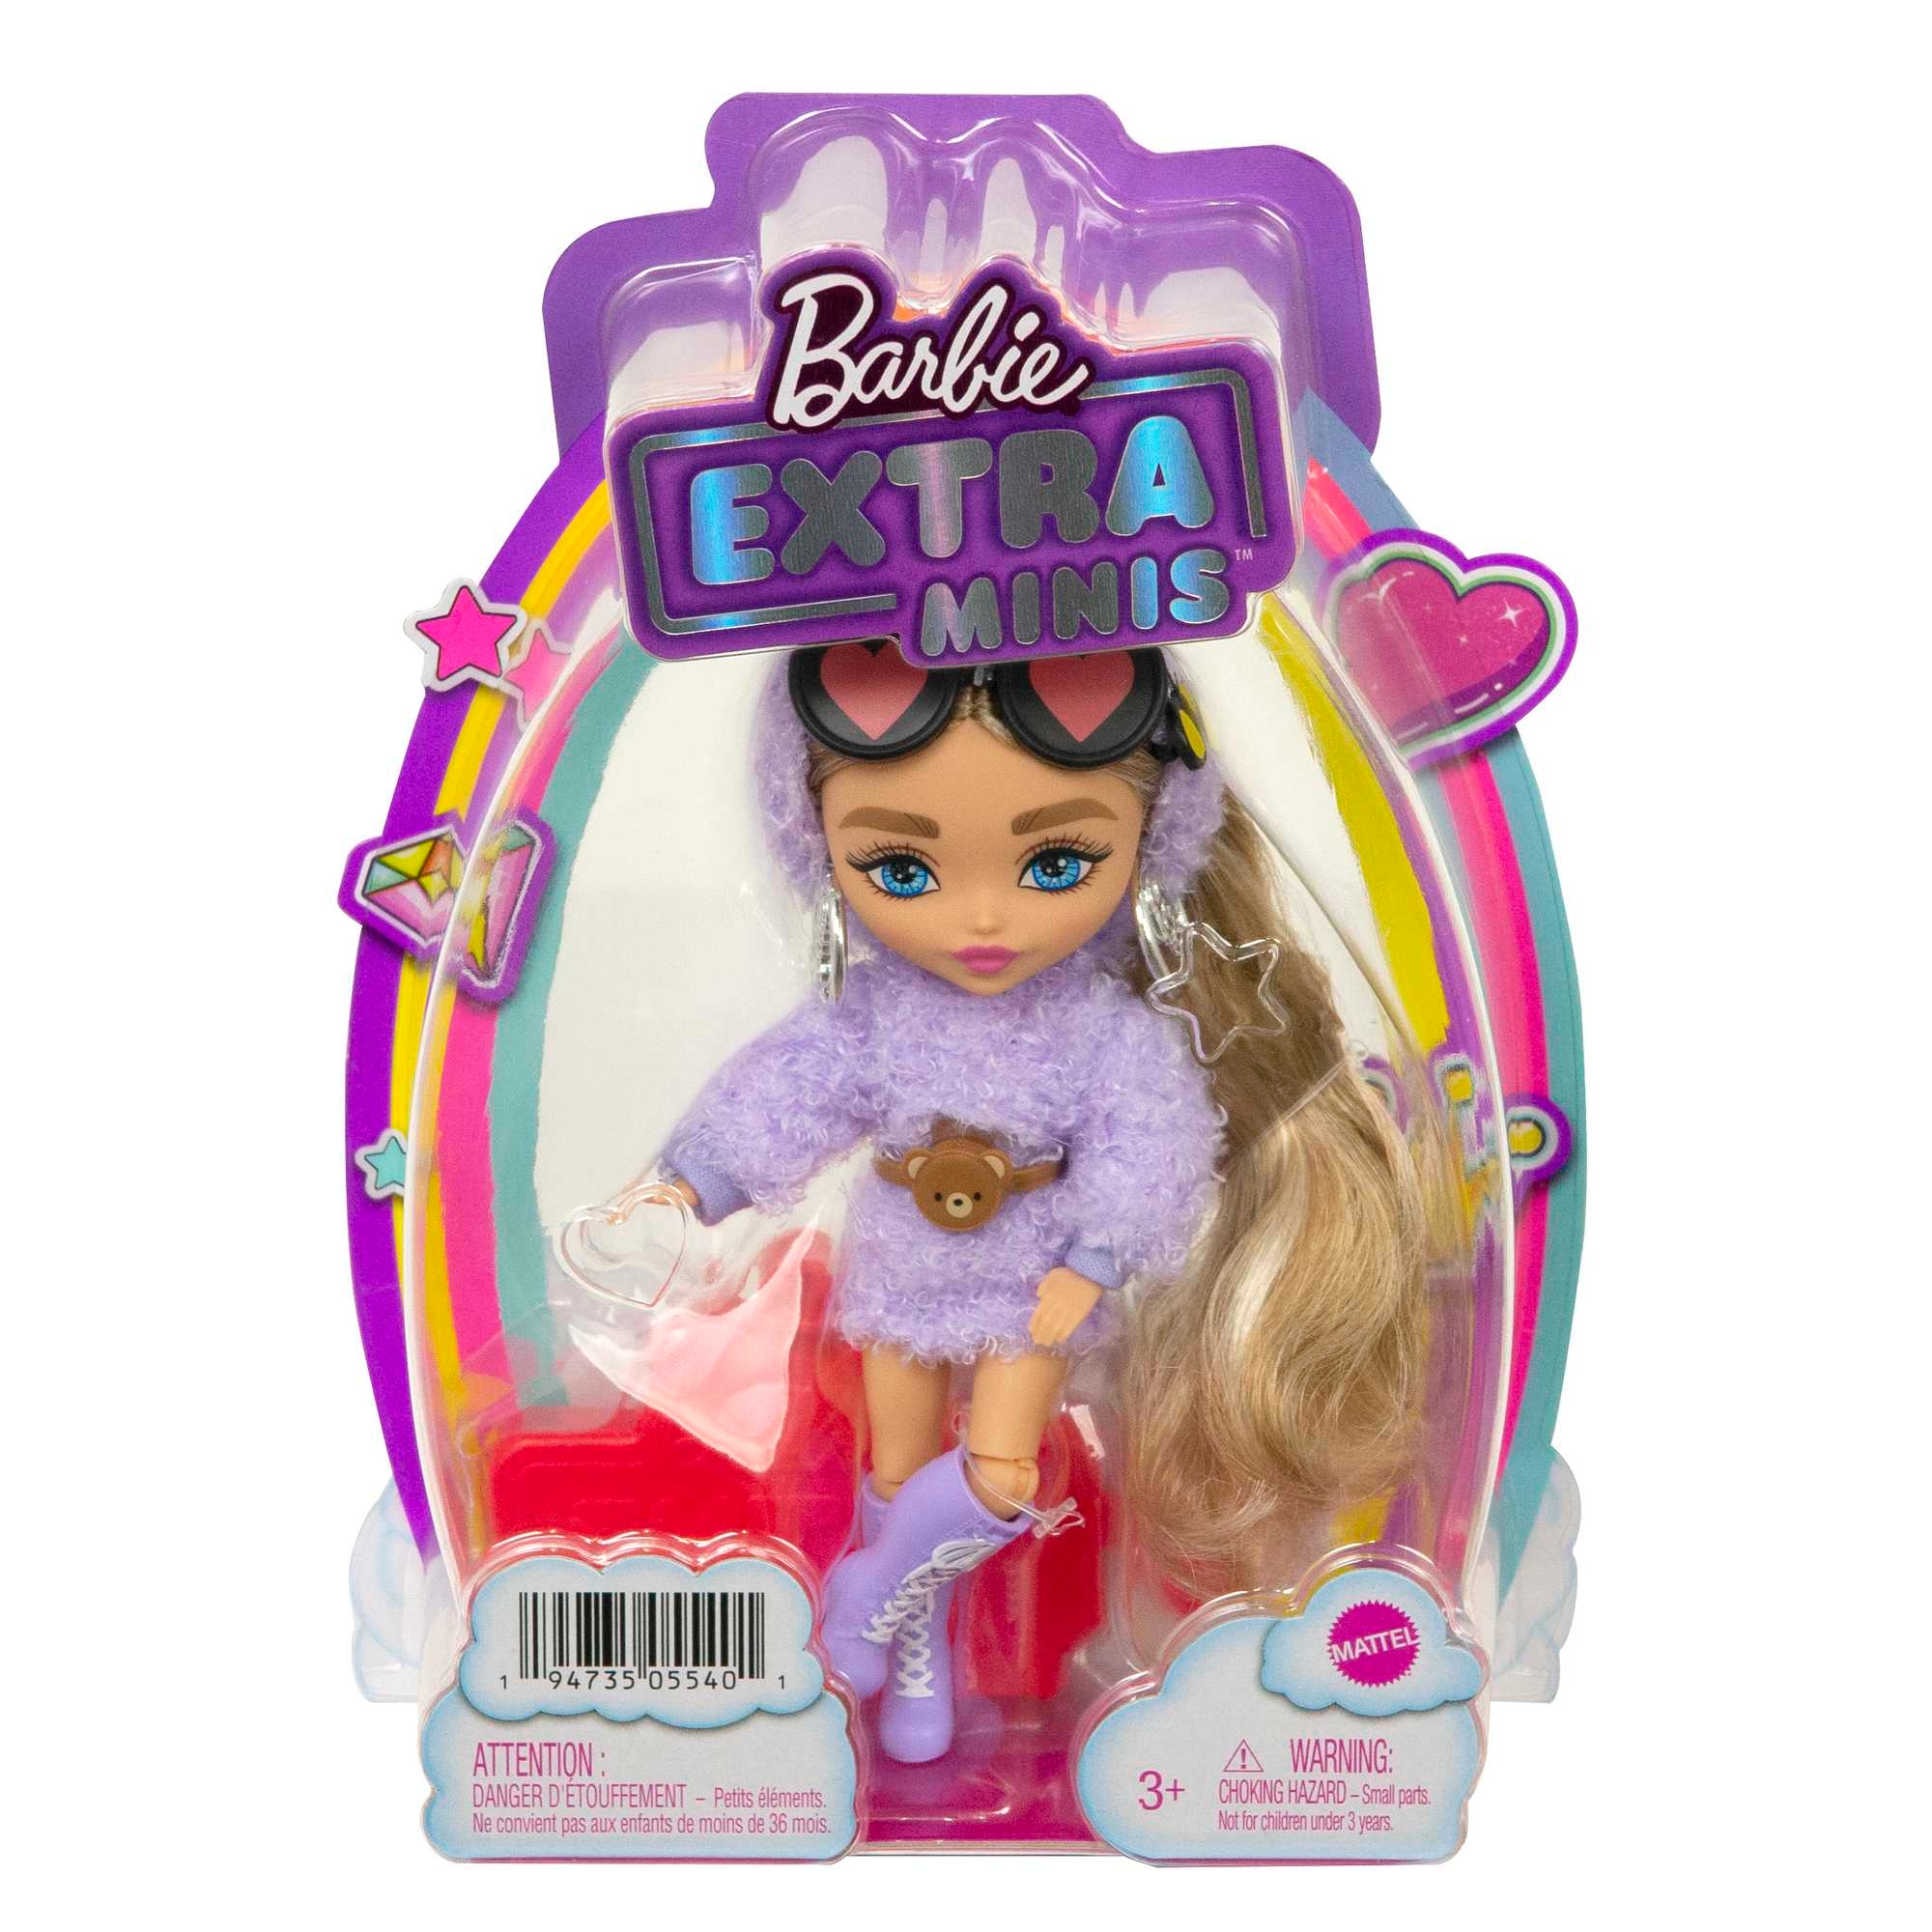 Мини куклы барби. Куклы Барби Экстра Минис. Куклы мини Барби Экстра мини Минис. Кукла Barbie Экстра, hgp62. Barbie Extra Minis 2022.